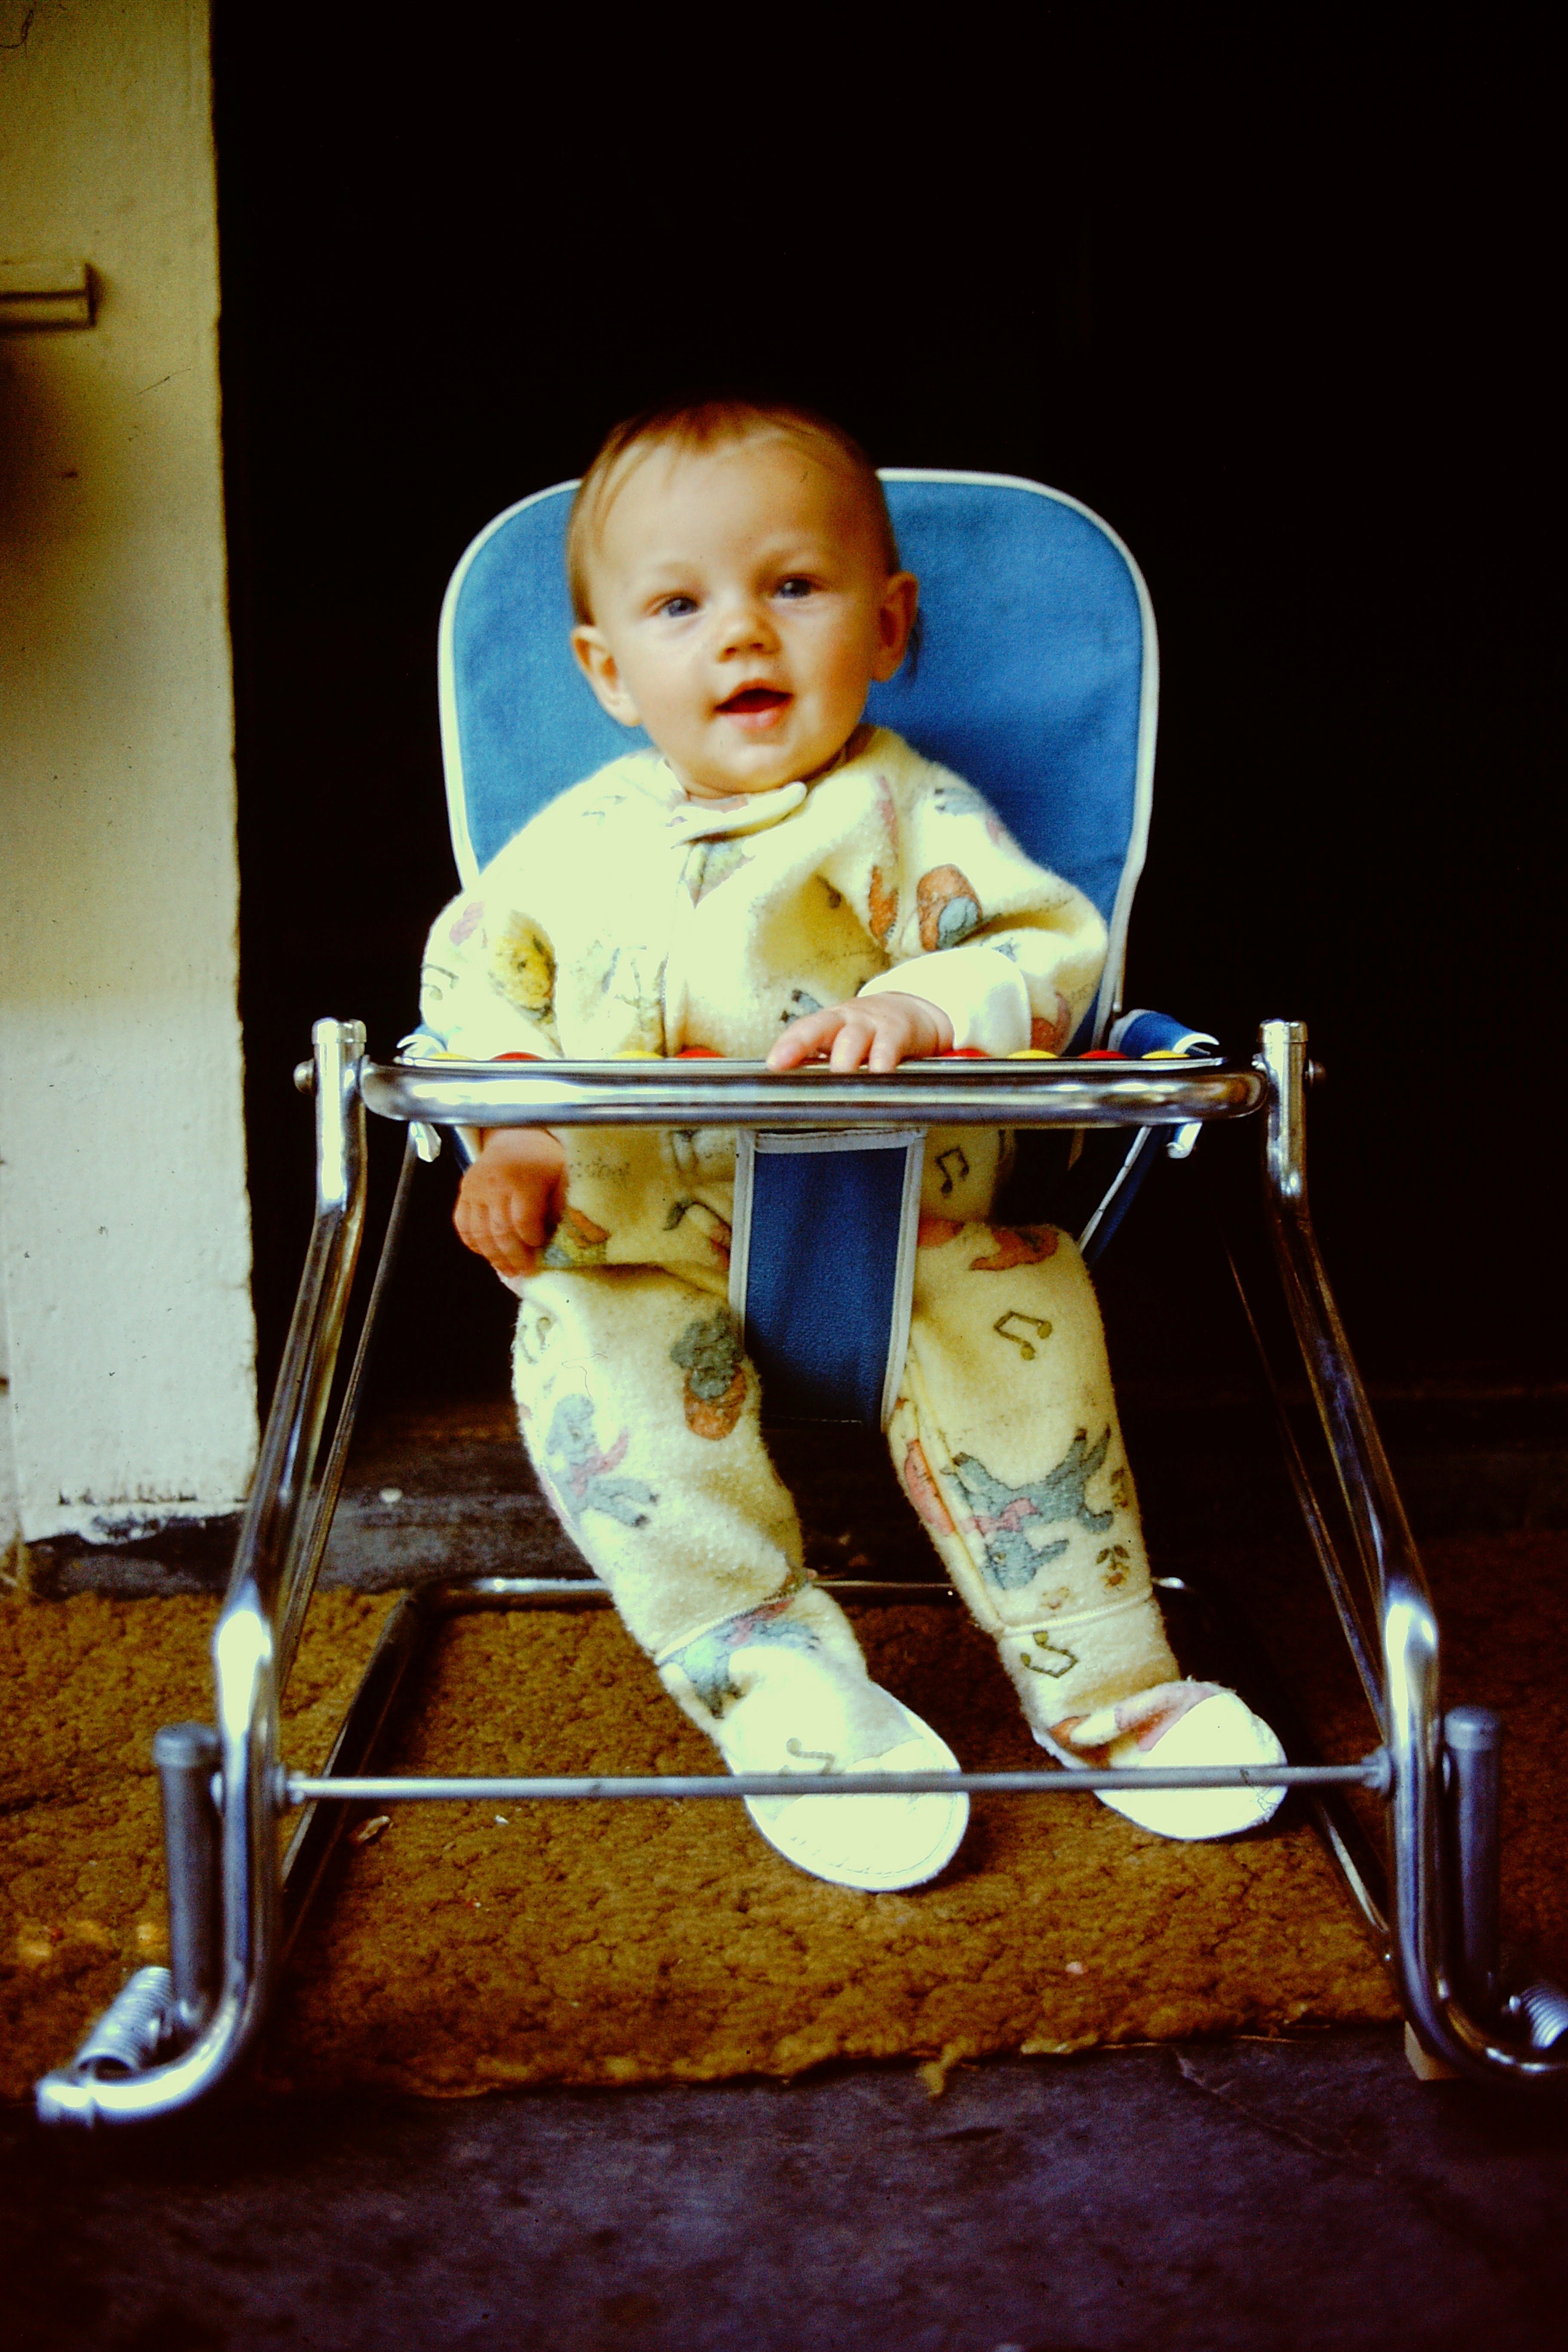 Le jeune garçon le 1er juillet 1975 | Source : Getty Images